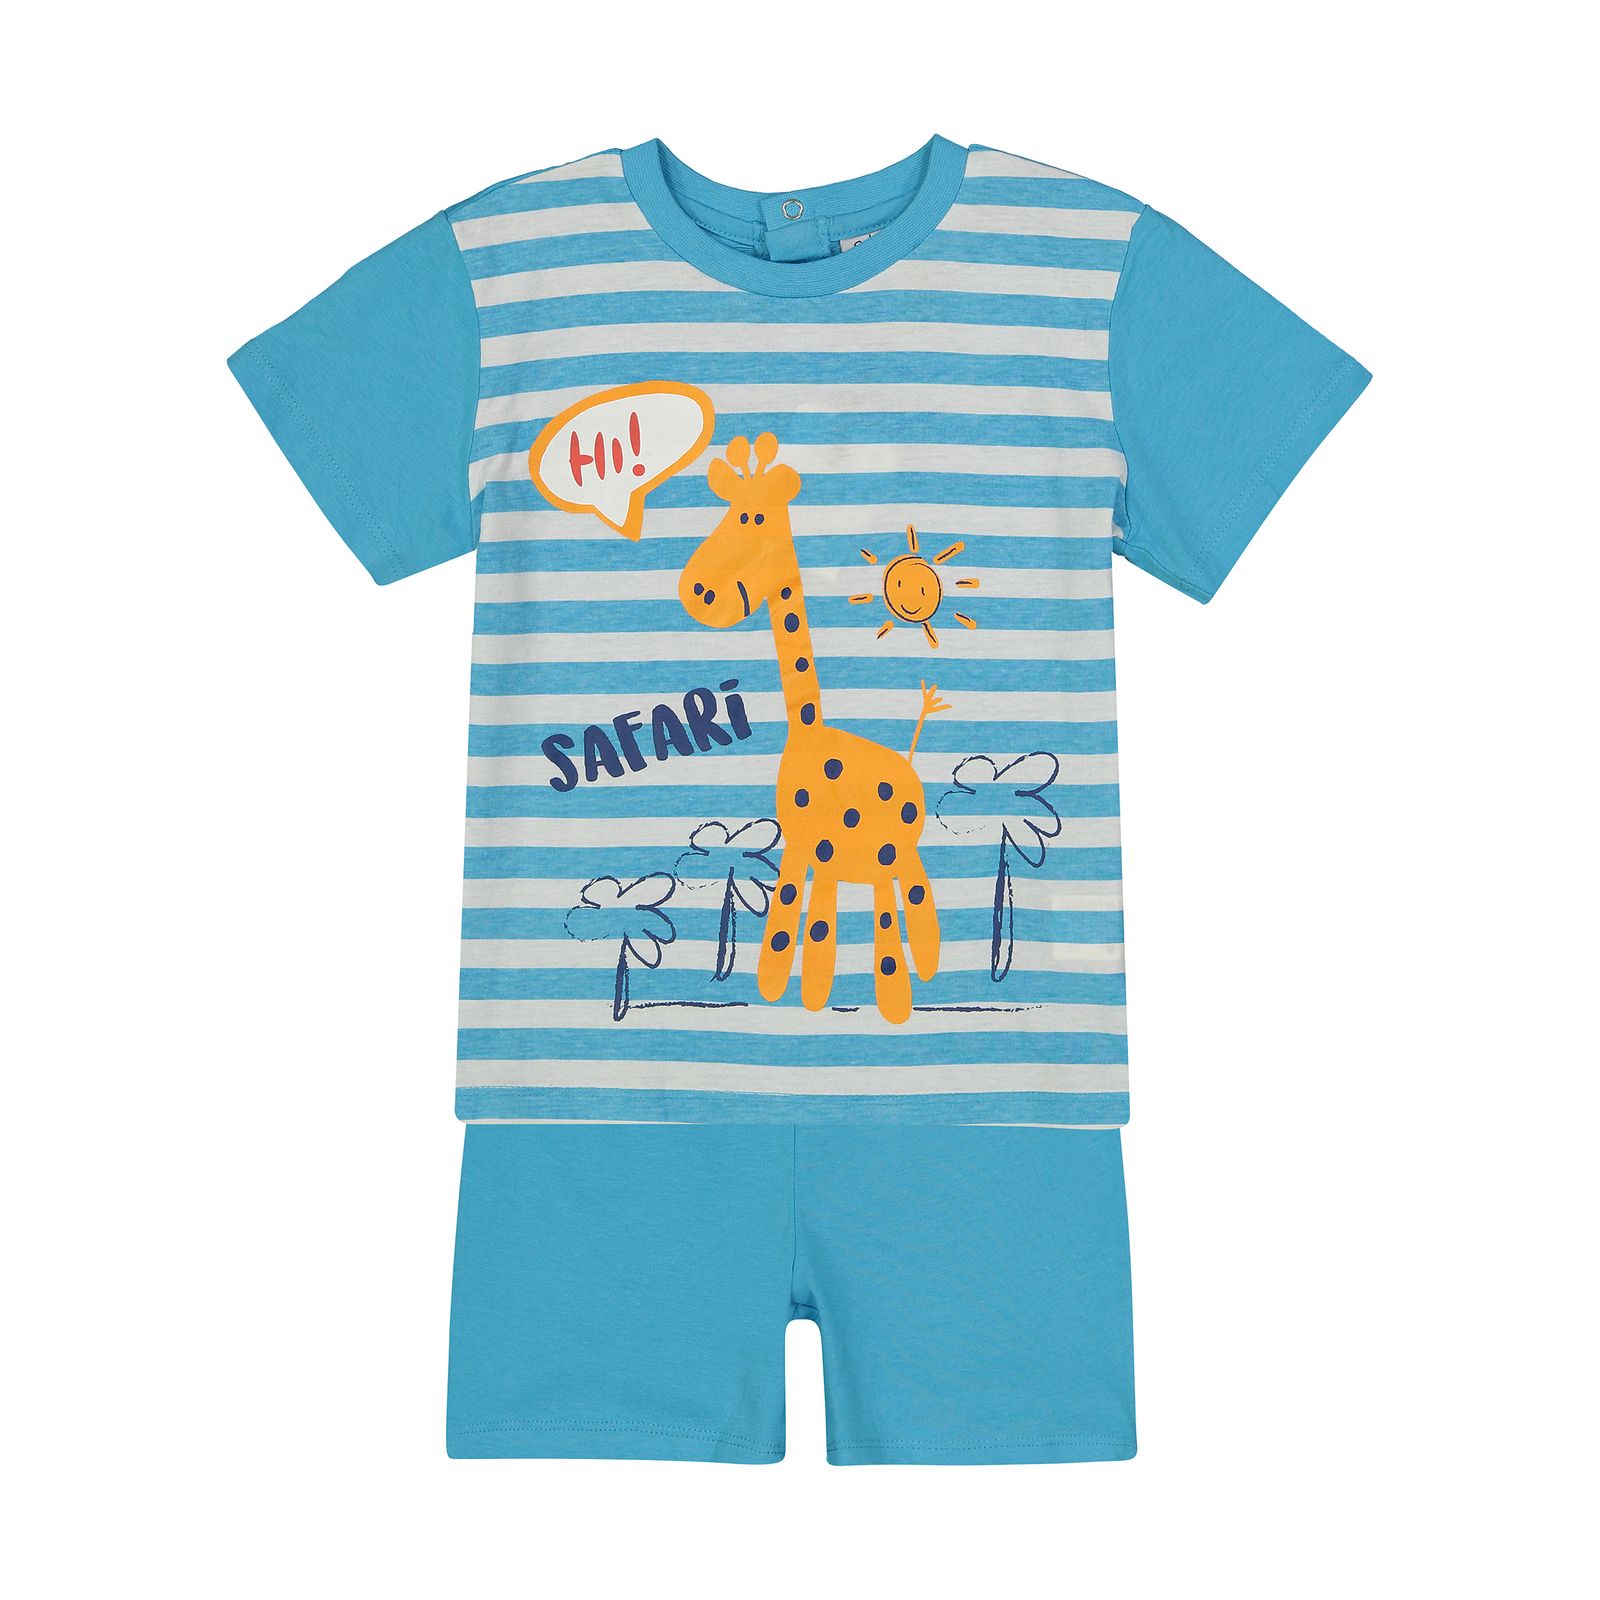 ست تی شرت و شلوارک نوزادی پسرانه بلوکیدز مدل 5139464 - آبي - 1